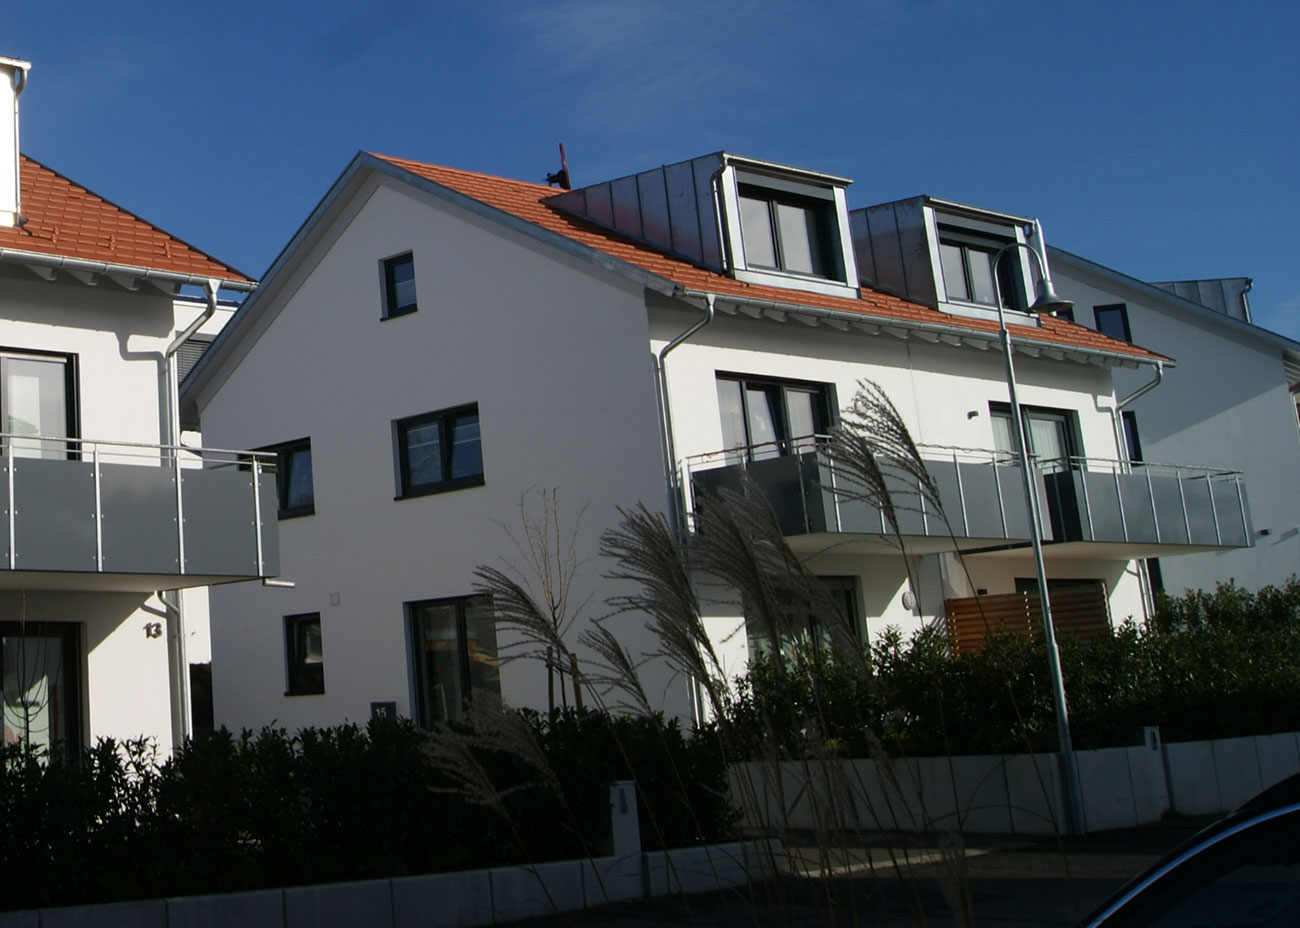 Neubau 6 Doppelhaushälften Zimmererweg 11/13 + 15/17 + 19/21, Konstanz